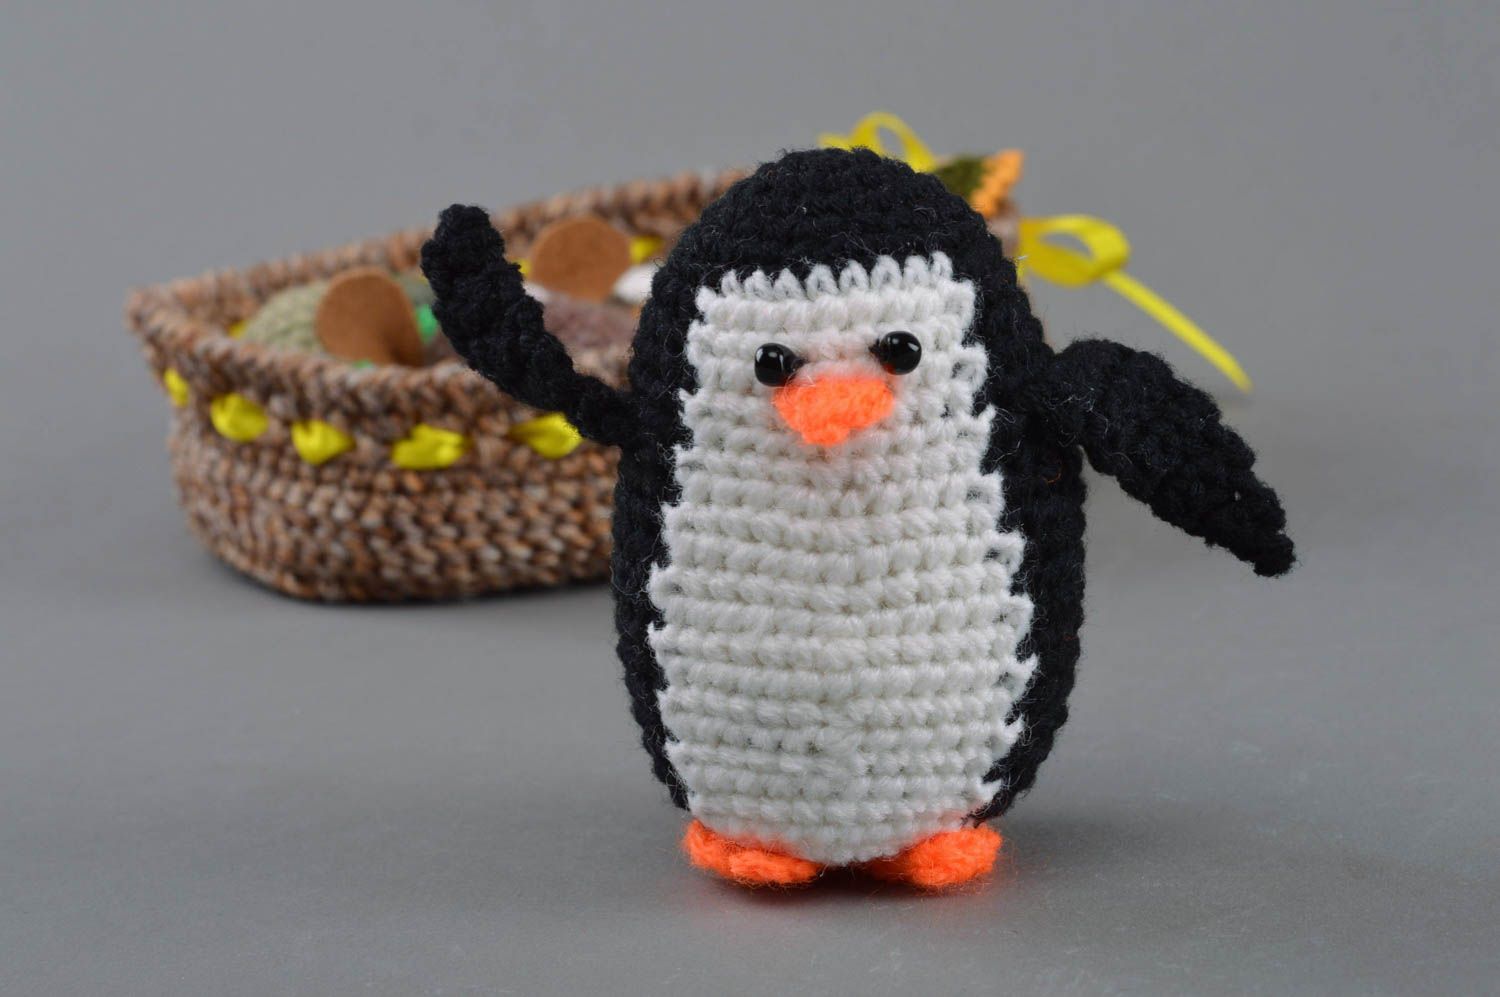 Смешная маленькая игрушка в виде пингвина черно-белая вязаная вручную для детей фото 3